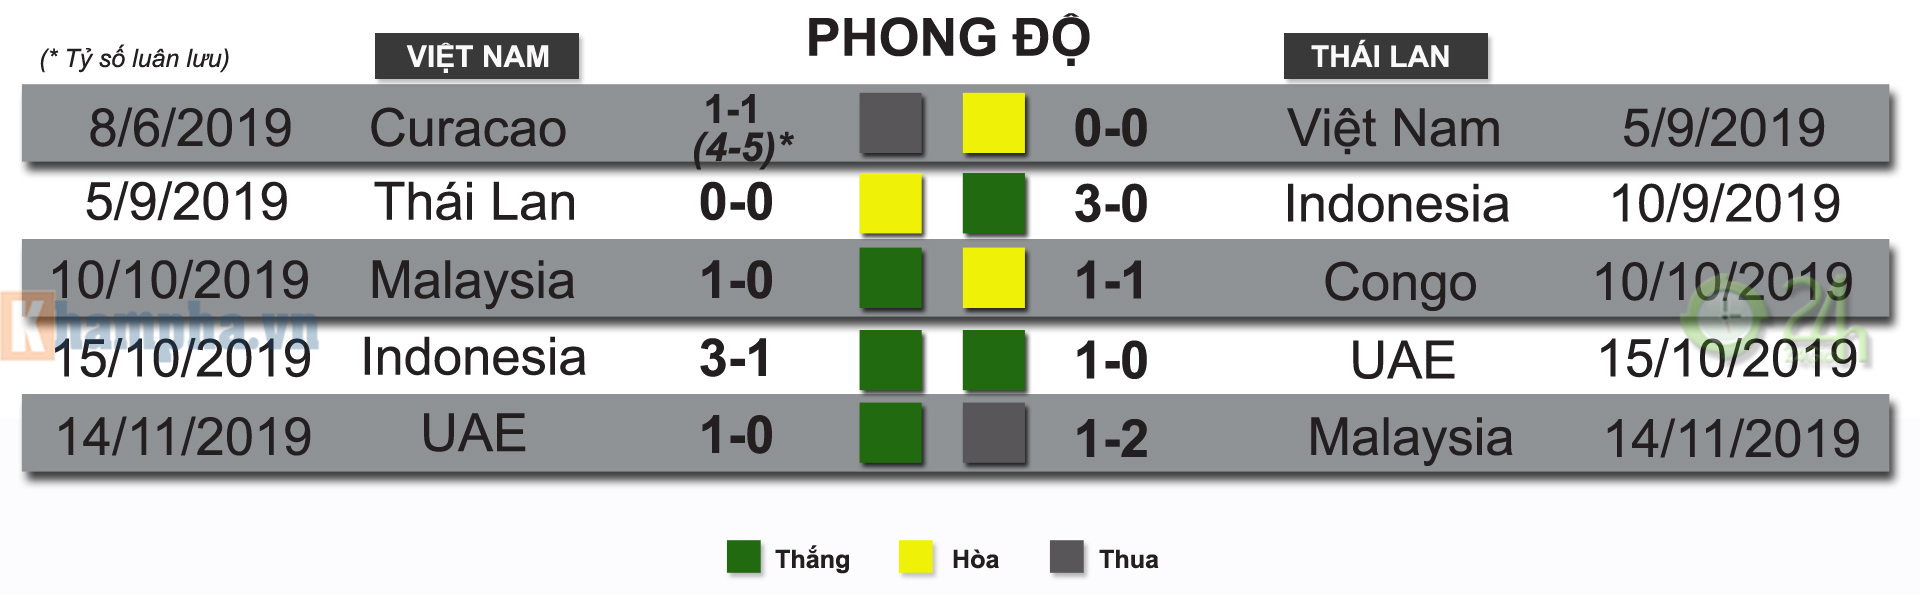 Nhận định bóng đá Việt Nam - Thái Lan: Đại chiến kinh điển, Mỹ Đình sục sôi (Vòng loại World Cup) - 6